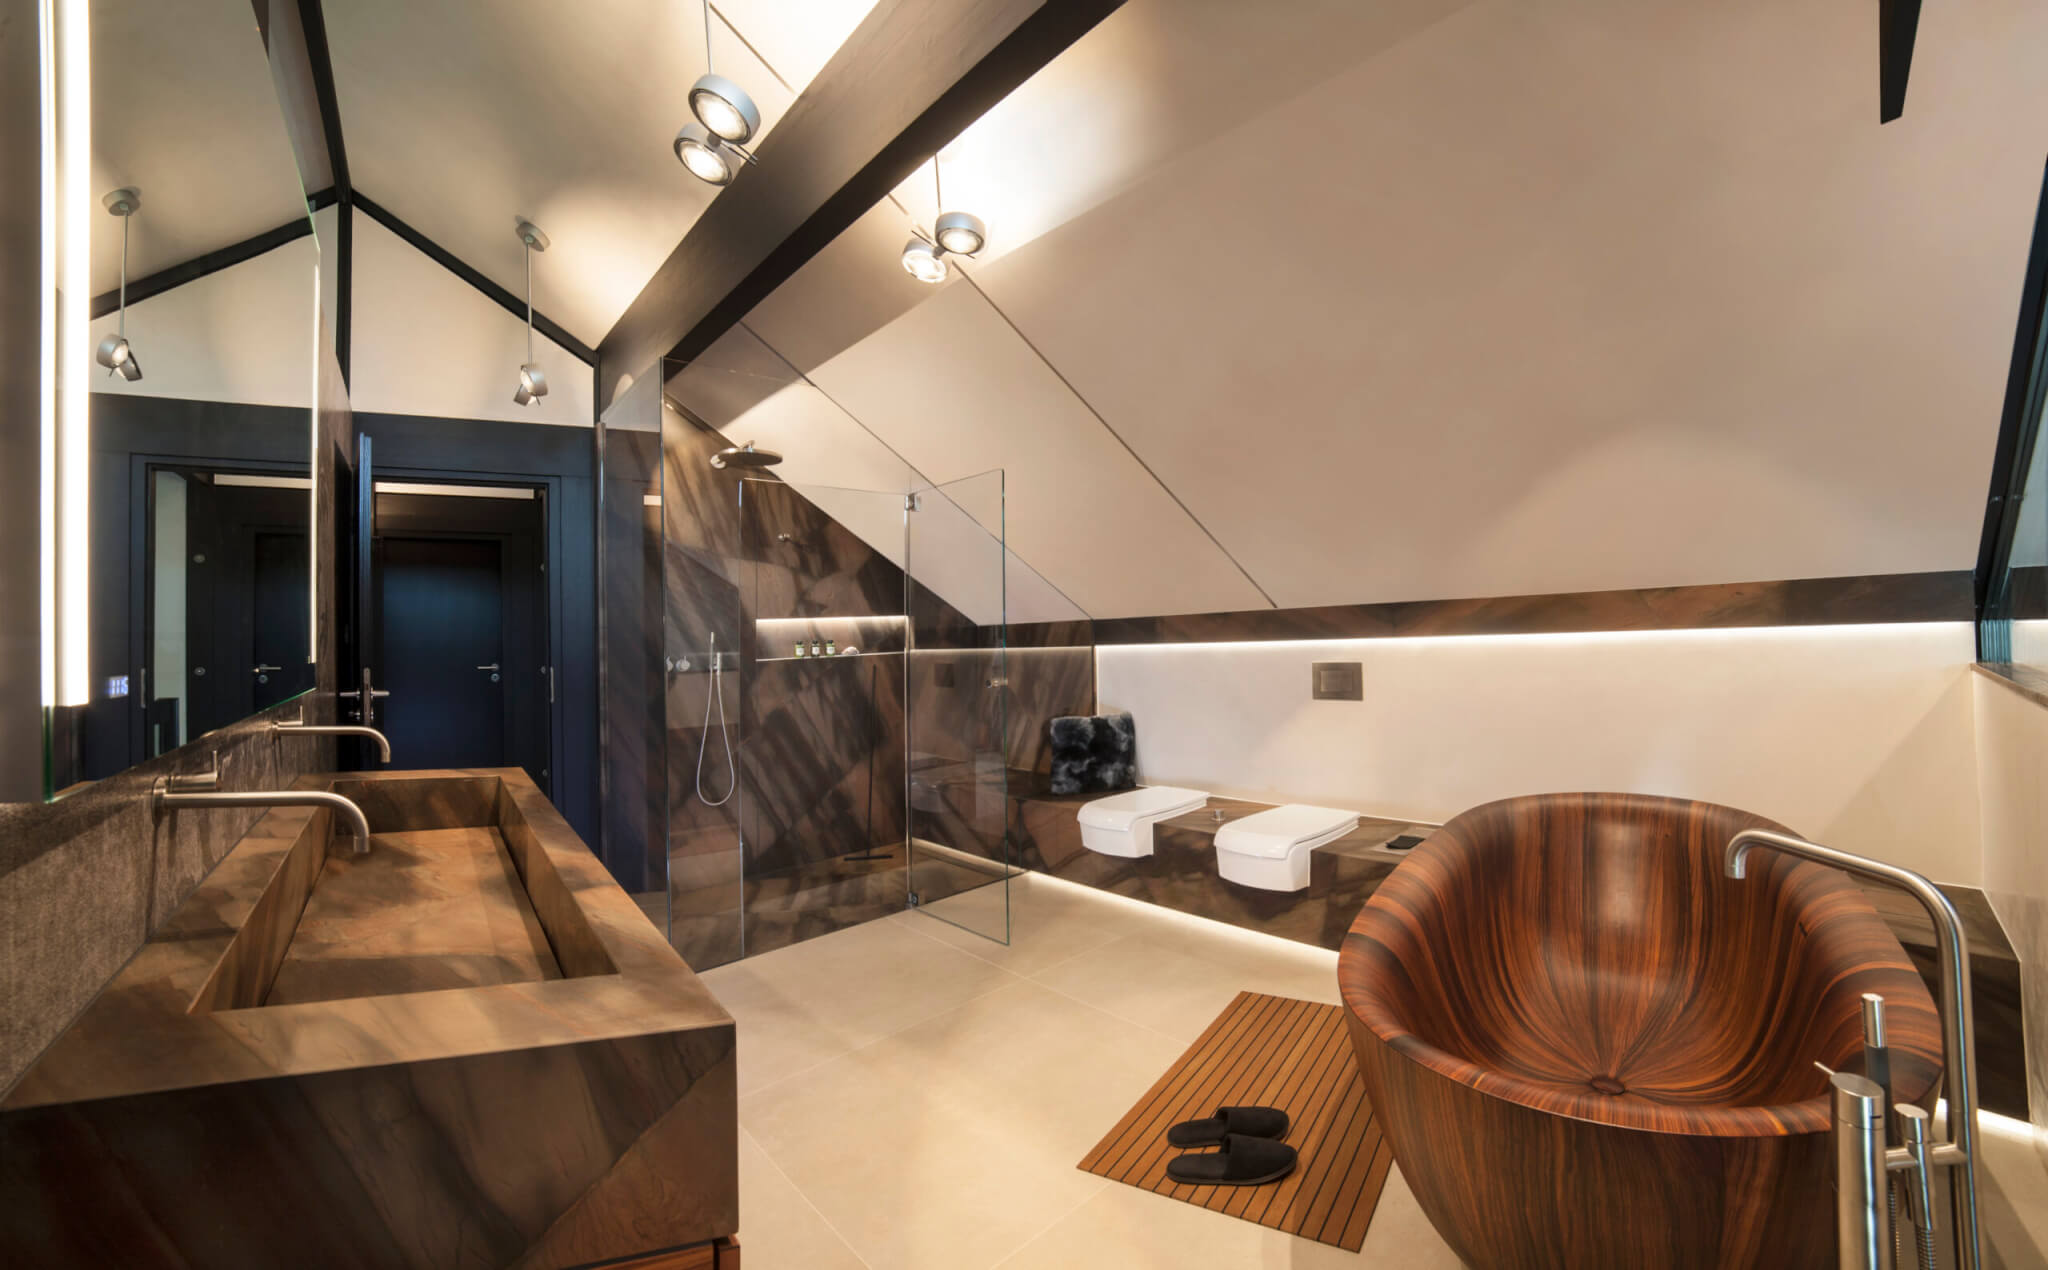 Modernes Badezimmer mit Natursteinelementen in Dusche, am Waschbecken und WC sowie einer Holzwanne